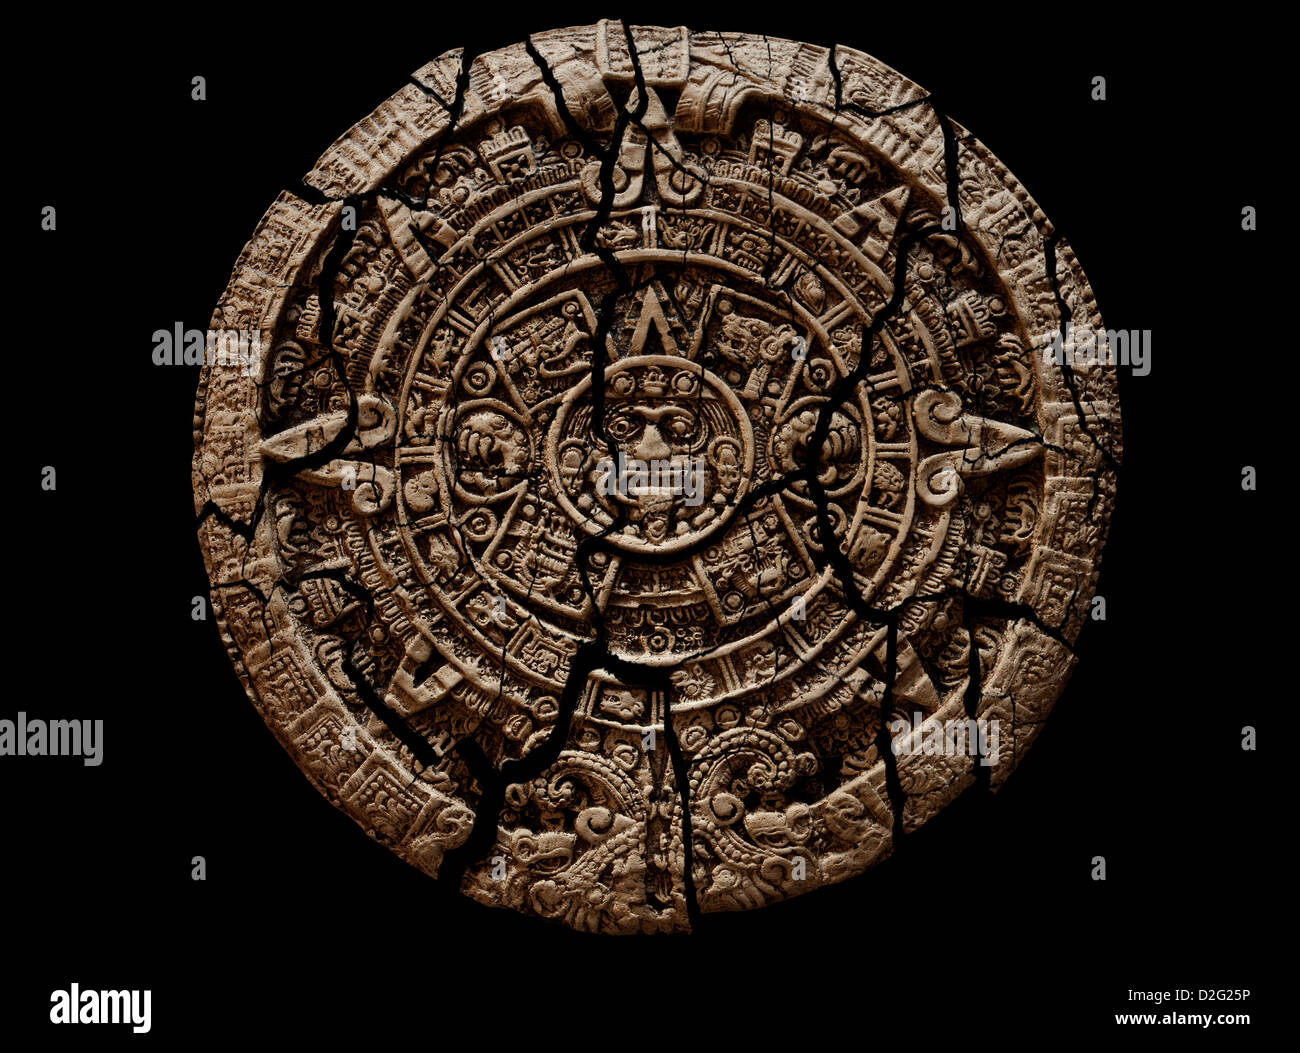 Rissig und brüchig Mayakalender Steintafel auf schwarzem Hintergrund. Ausschnitt Stockfoto